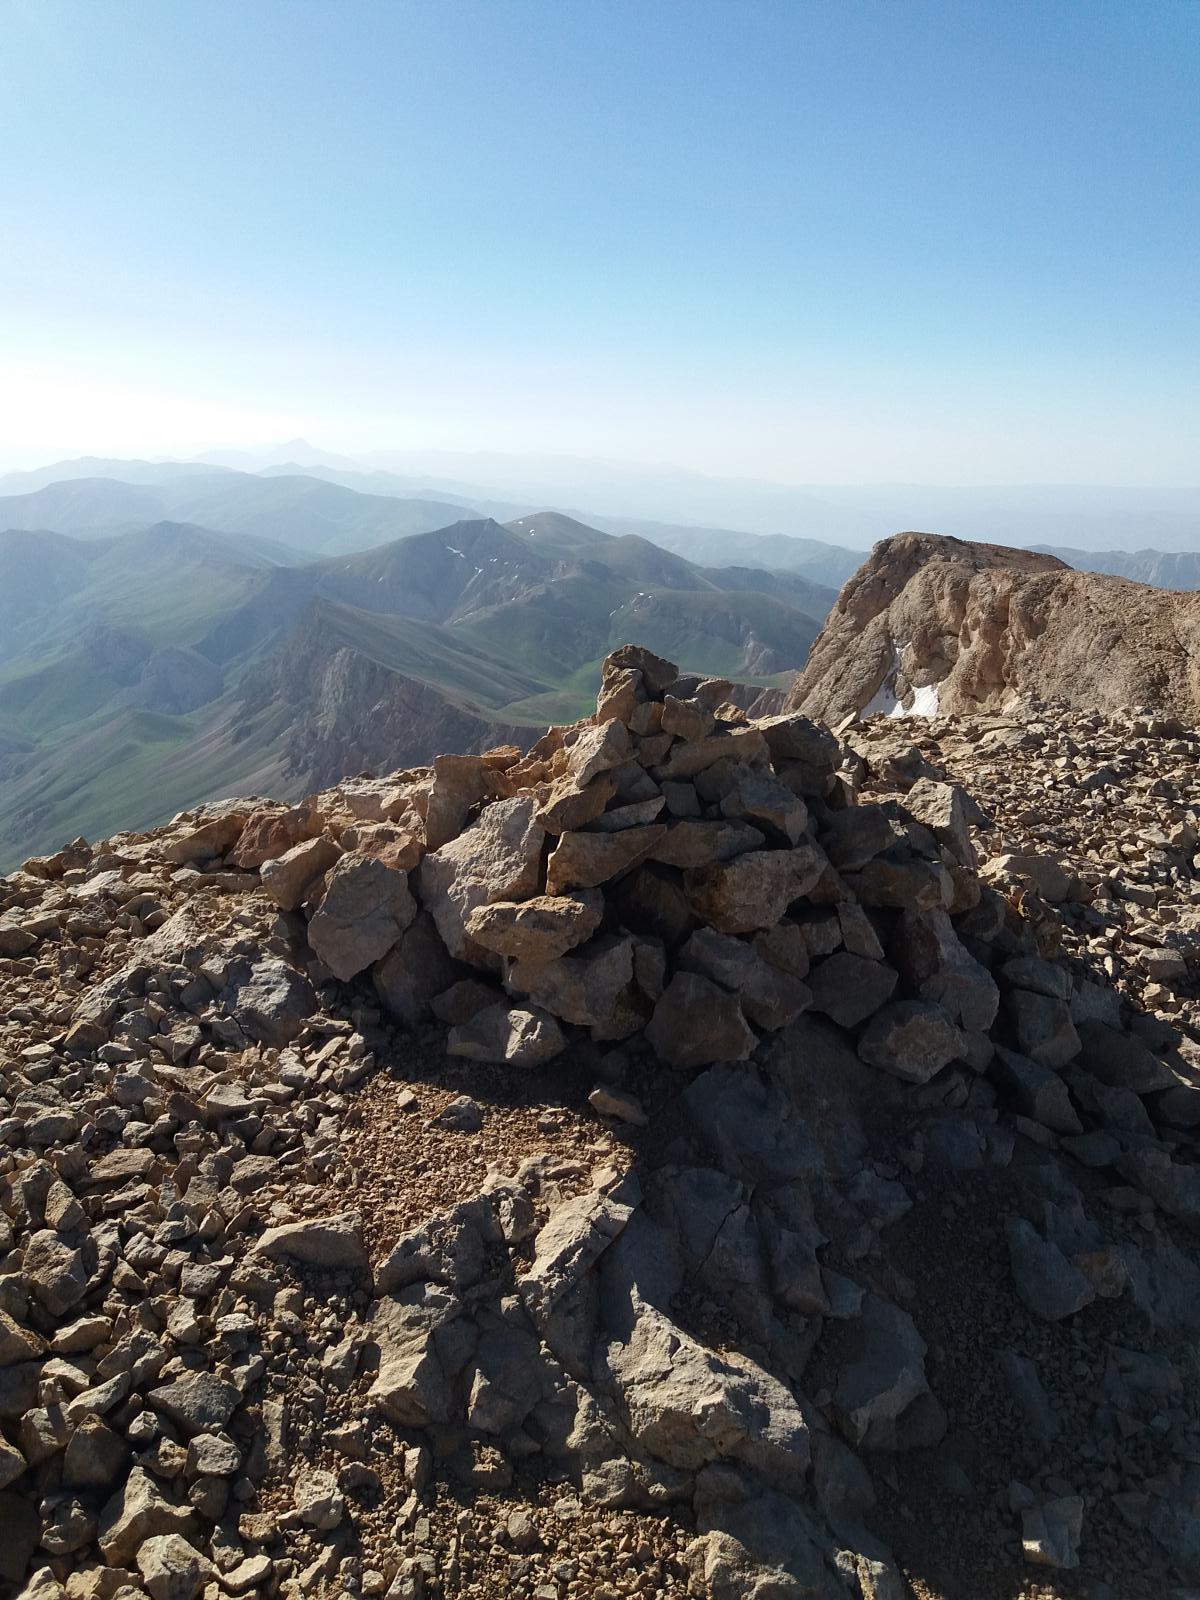 قله پرچنان | عاشقان طبیعت ایران | قله پرچنان بلندترین قله البرز شرقی